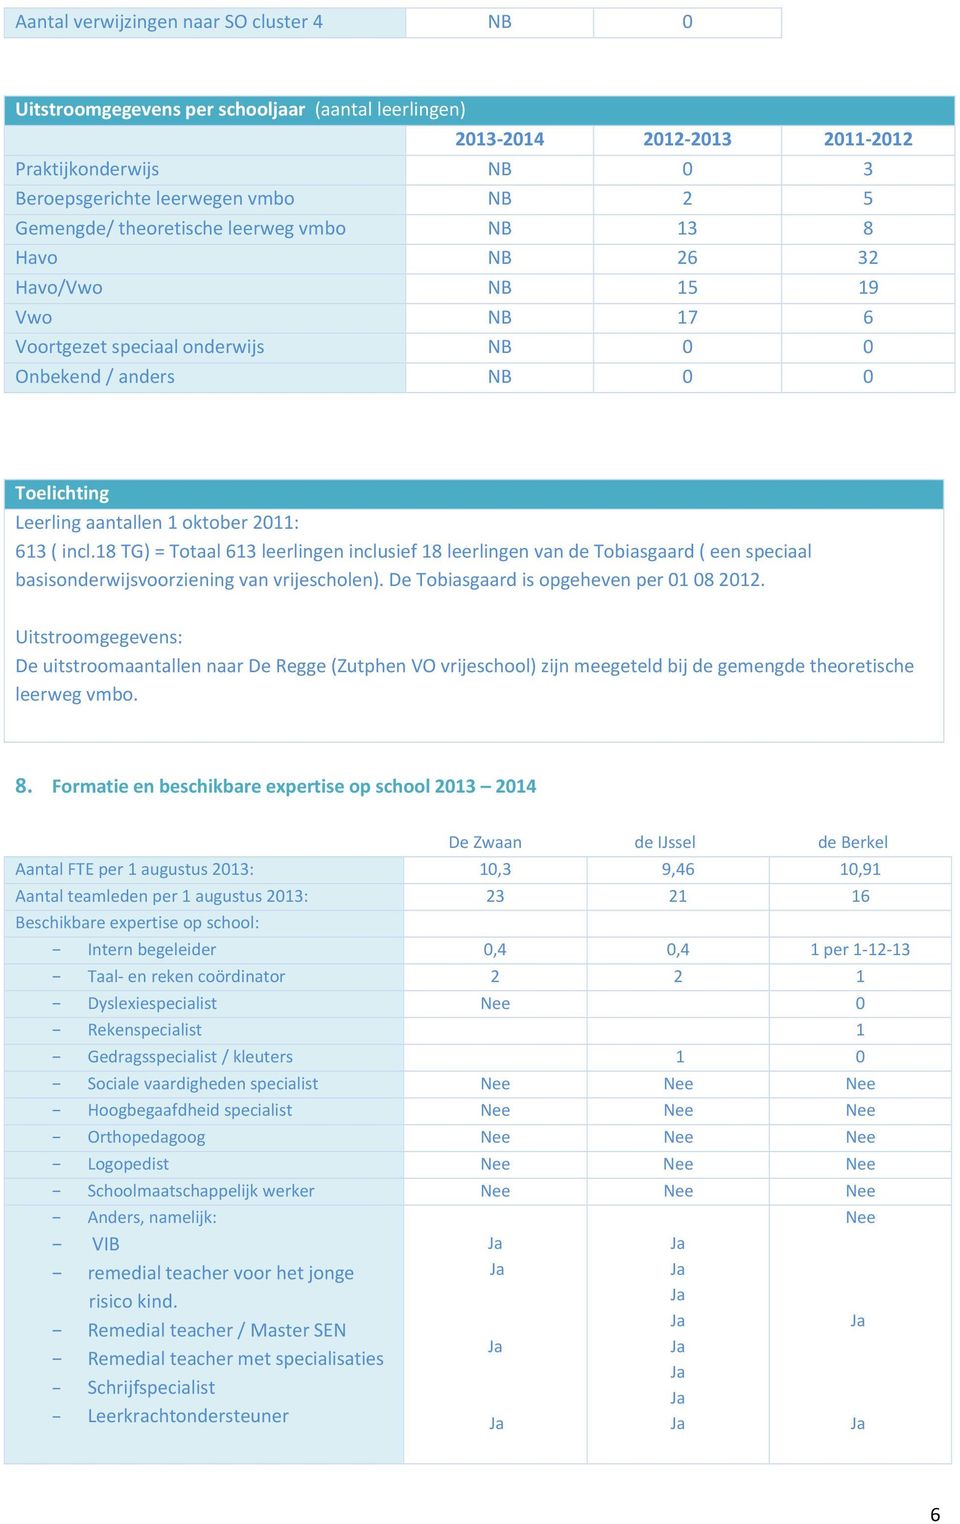 18 TG) = Totaal 613 leerlingen inclusief 18 leerlingen van de Tobiasgaard ( een speciaal basisonderwijsvoorziening van vrijescholen). De Tobiasgaard is opgeheven per 01 08 2012.